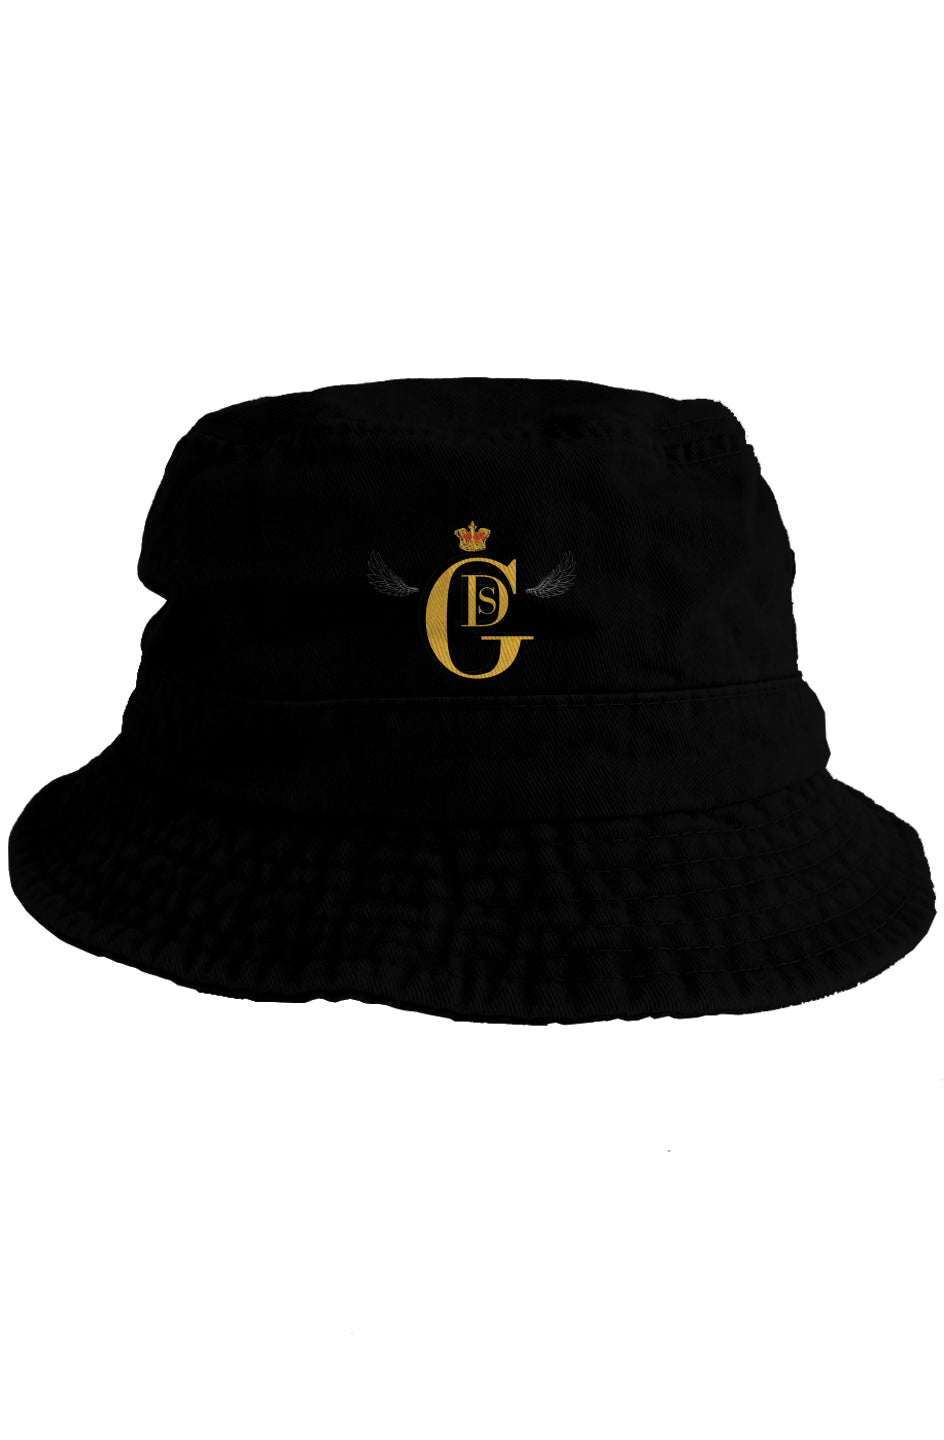 Capo Di Tutti Capo - Boss of All Bosses Bucket Hat